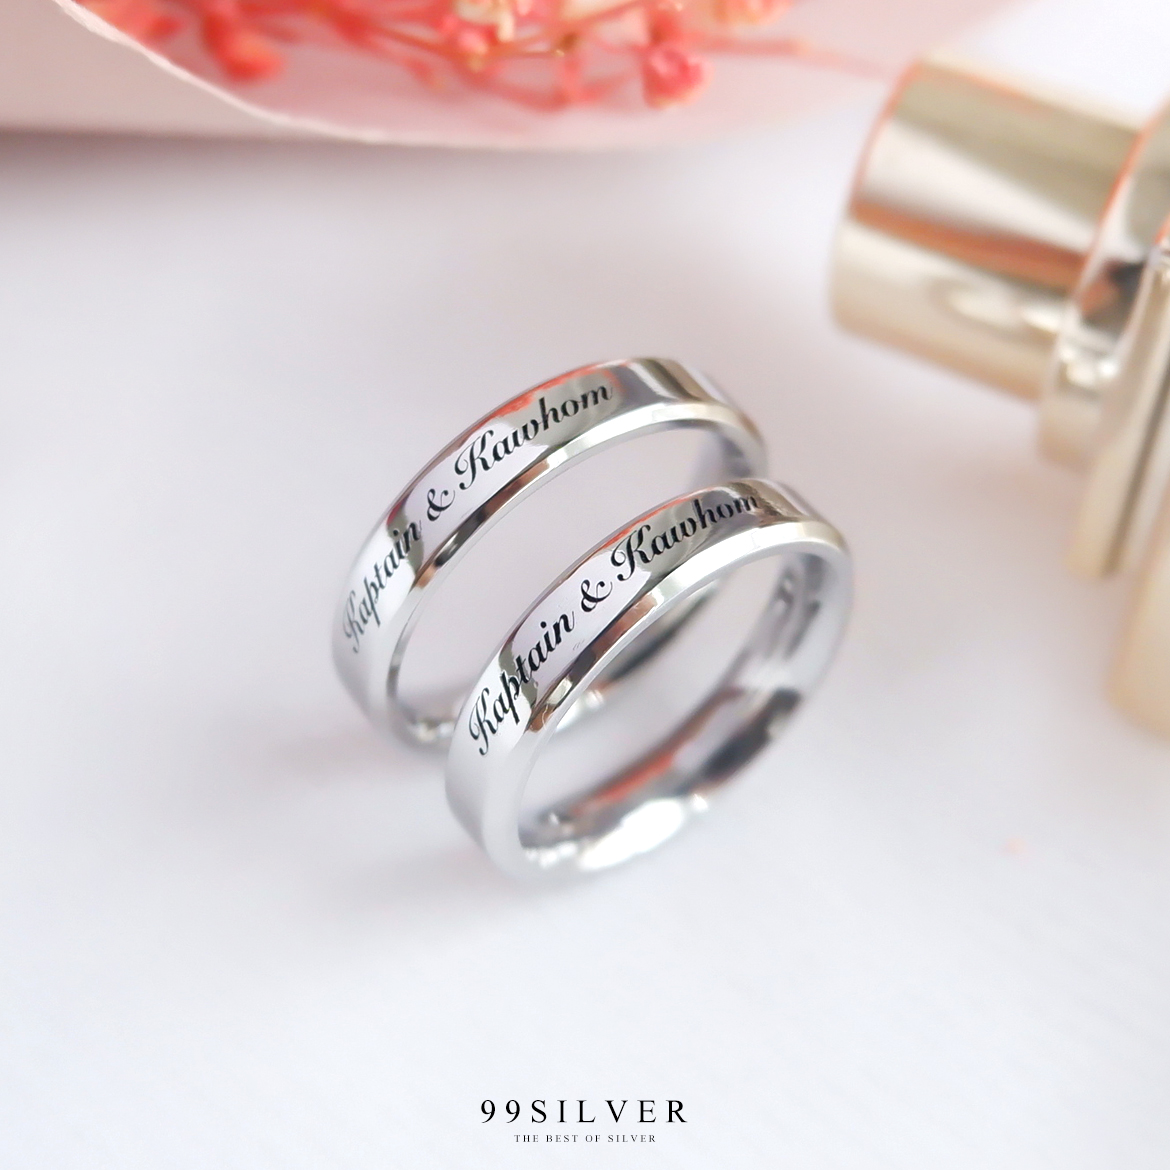 แหวนสแตนเลสแท้หน้ากว้าง 4 มิลลิเมตร ขอบลดมุมตัดสวยงาม ตัวเรือนสีเงินเงา